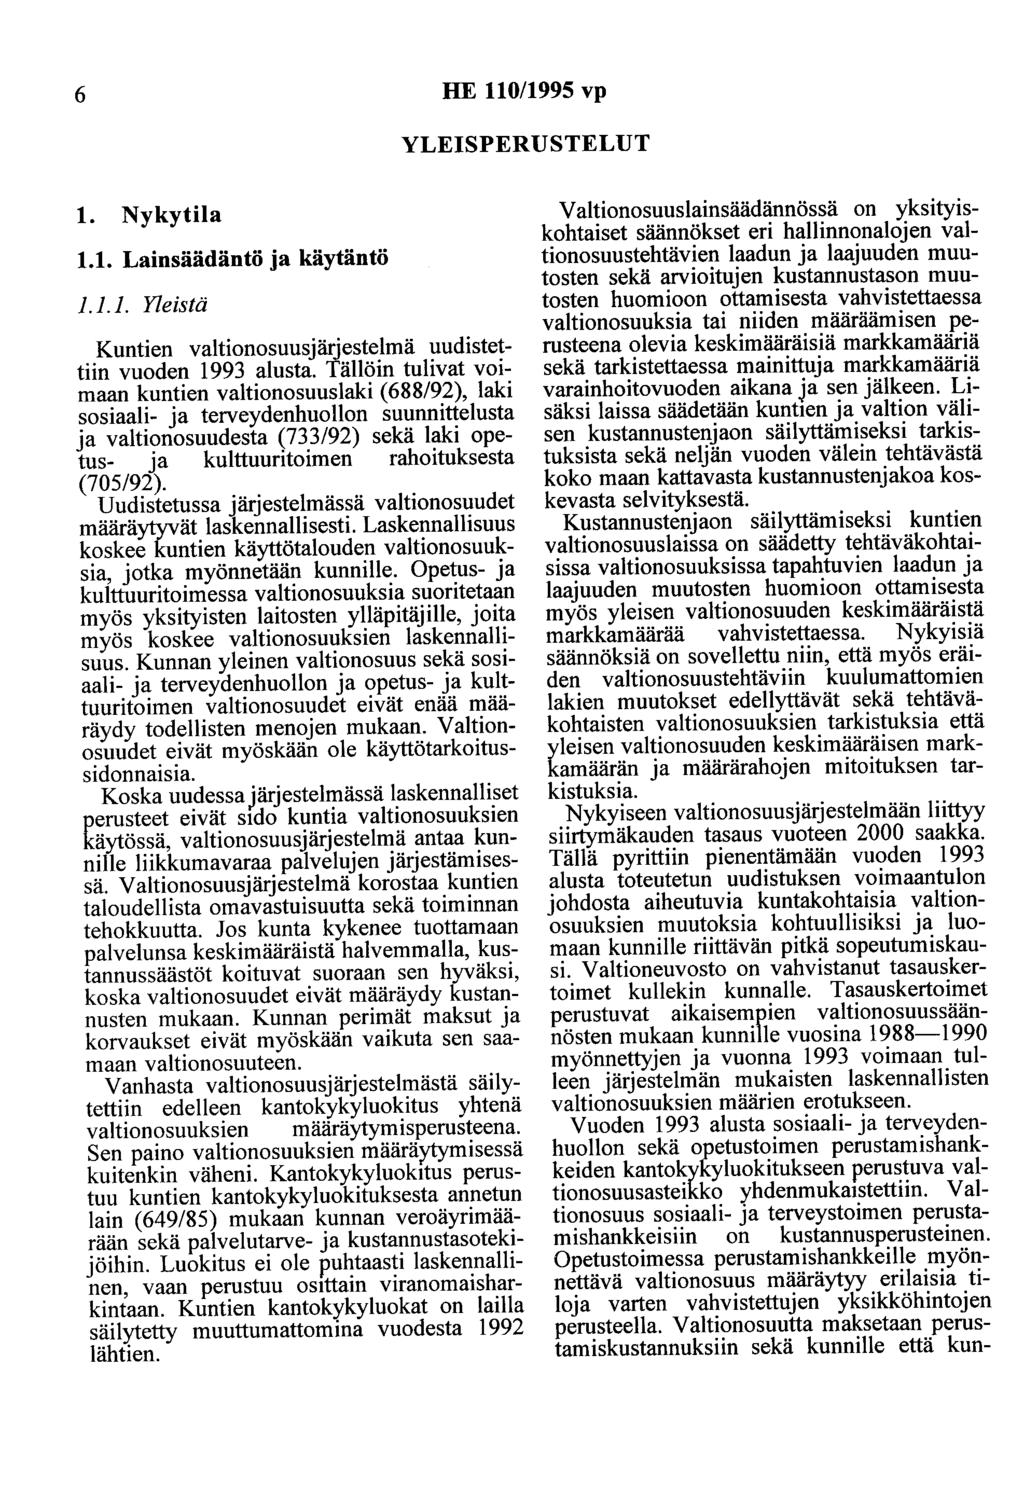 6 HE 110/1995 vp YLEISPERUSTELUT 1. Nykytila 1.1. Lainsäädäntö ja käytäntö 1.1.1. Yleistä Kuntien valtionosuusjärjestelmä uudistettiin vuoden 1993 alusta.